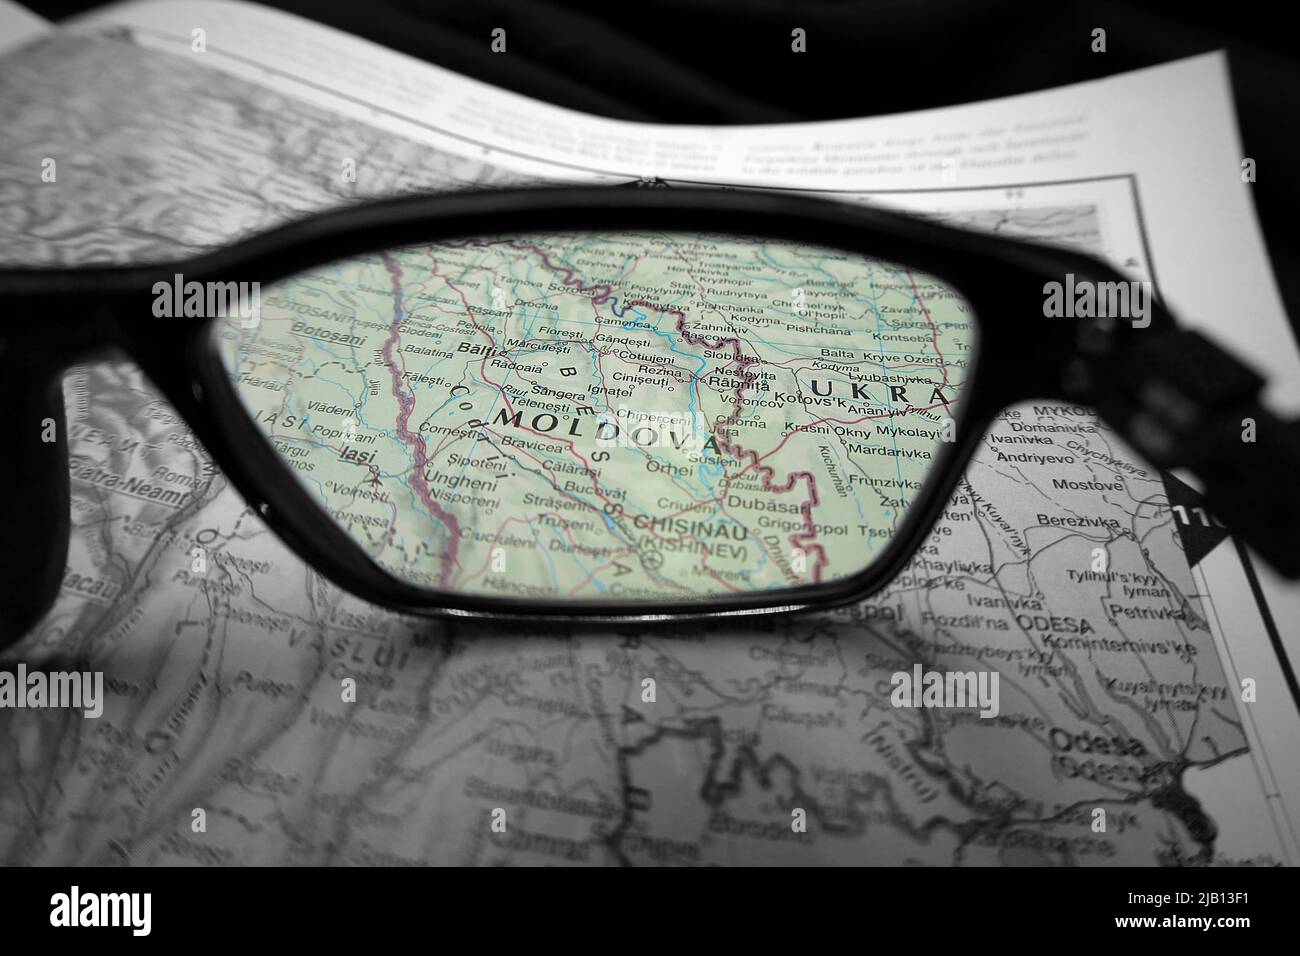 Una imagen ilustrativa creativa que muestra el país de Moldavia en un mapa a través de la lente de las gafas de lectura. El área alrededor de la palabra Moldavia en color Foto de stock